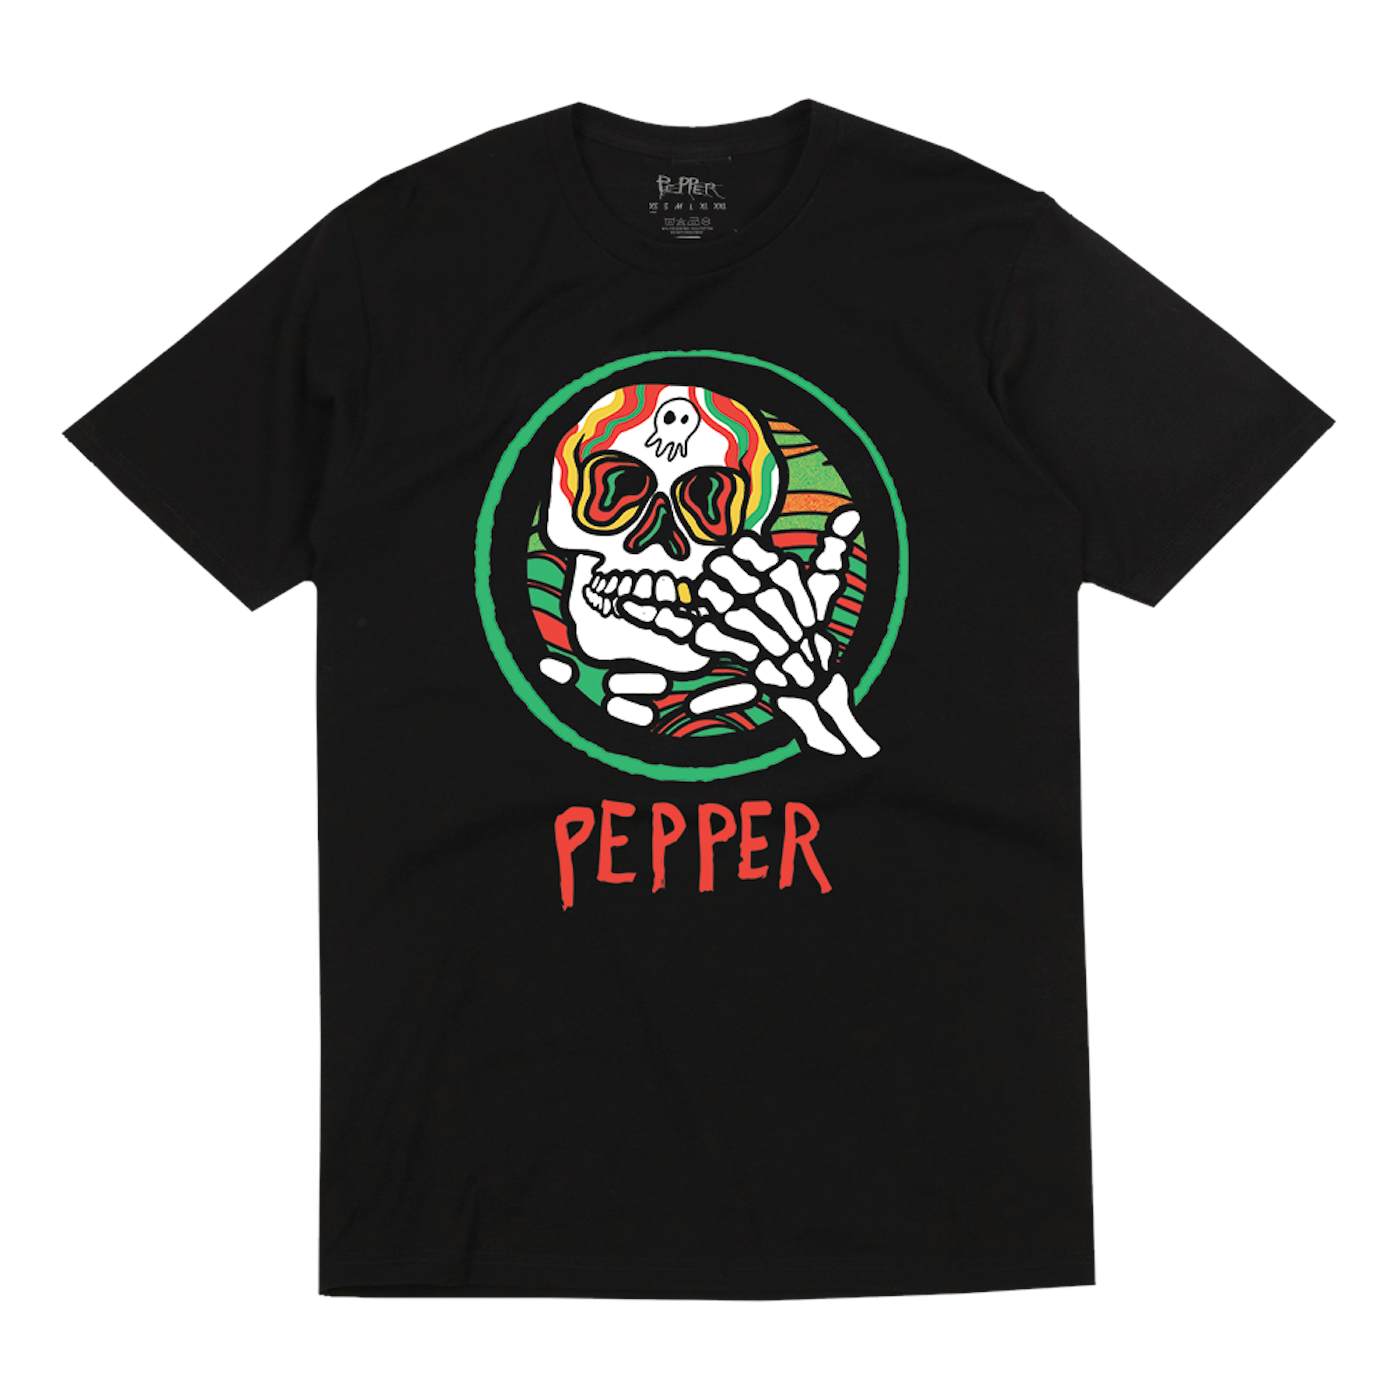 Pepper "Hang Loose Skeleton" Black Tee